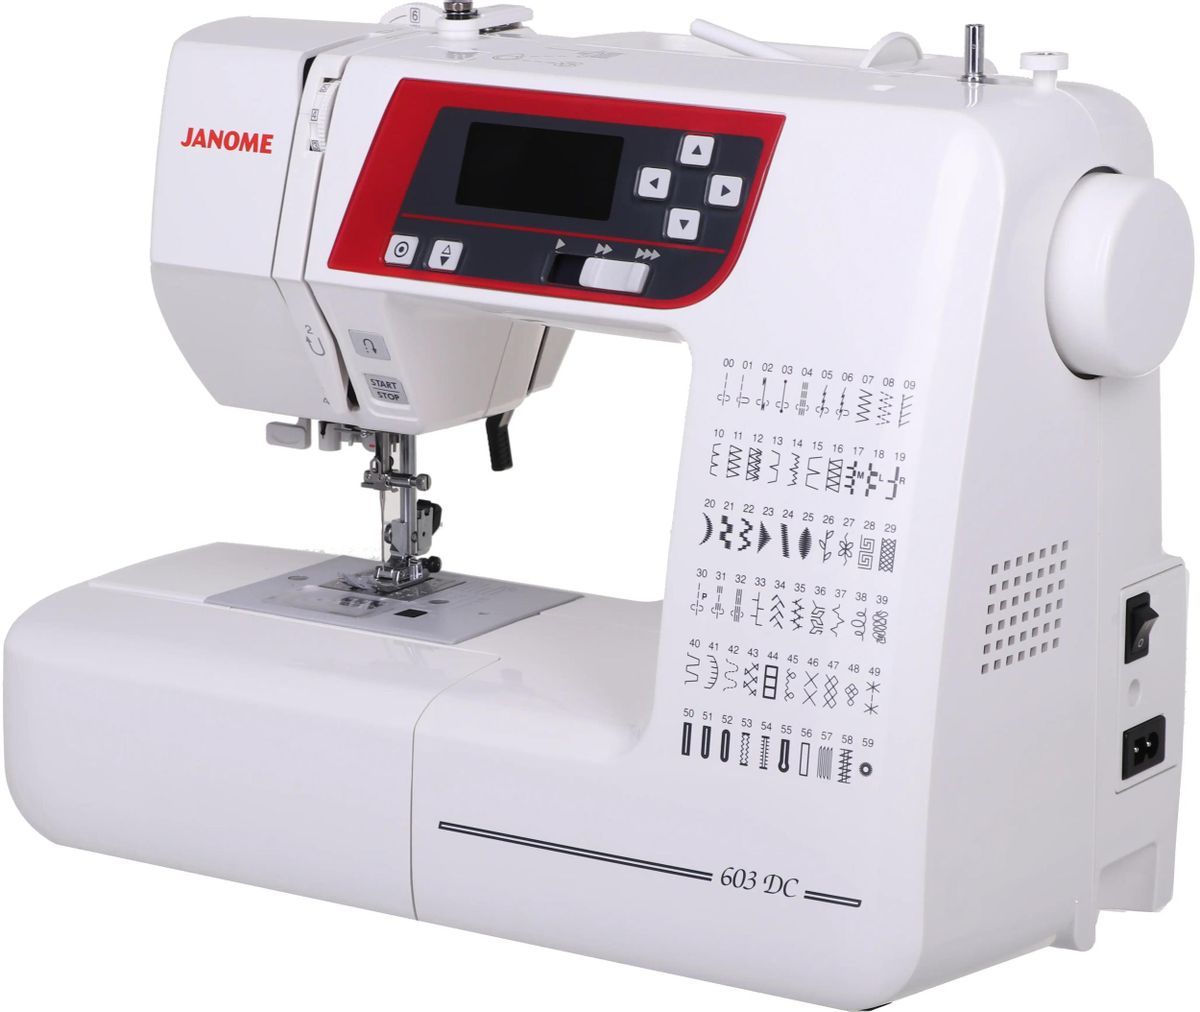 Швейная машина Janome 603 DC белый швейная машина janome 603 dc 60 операций автомат бело красная